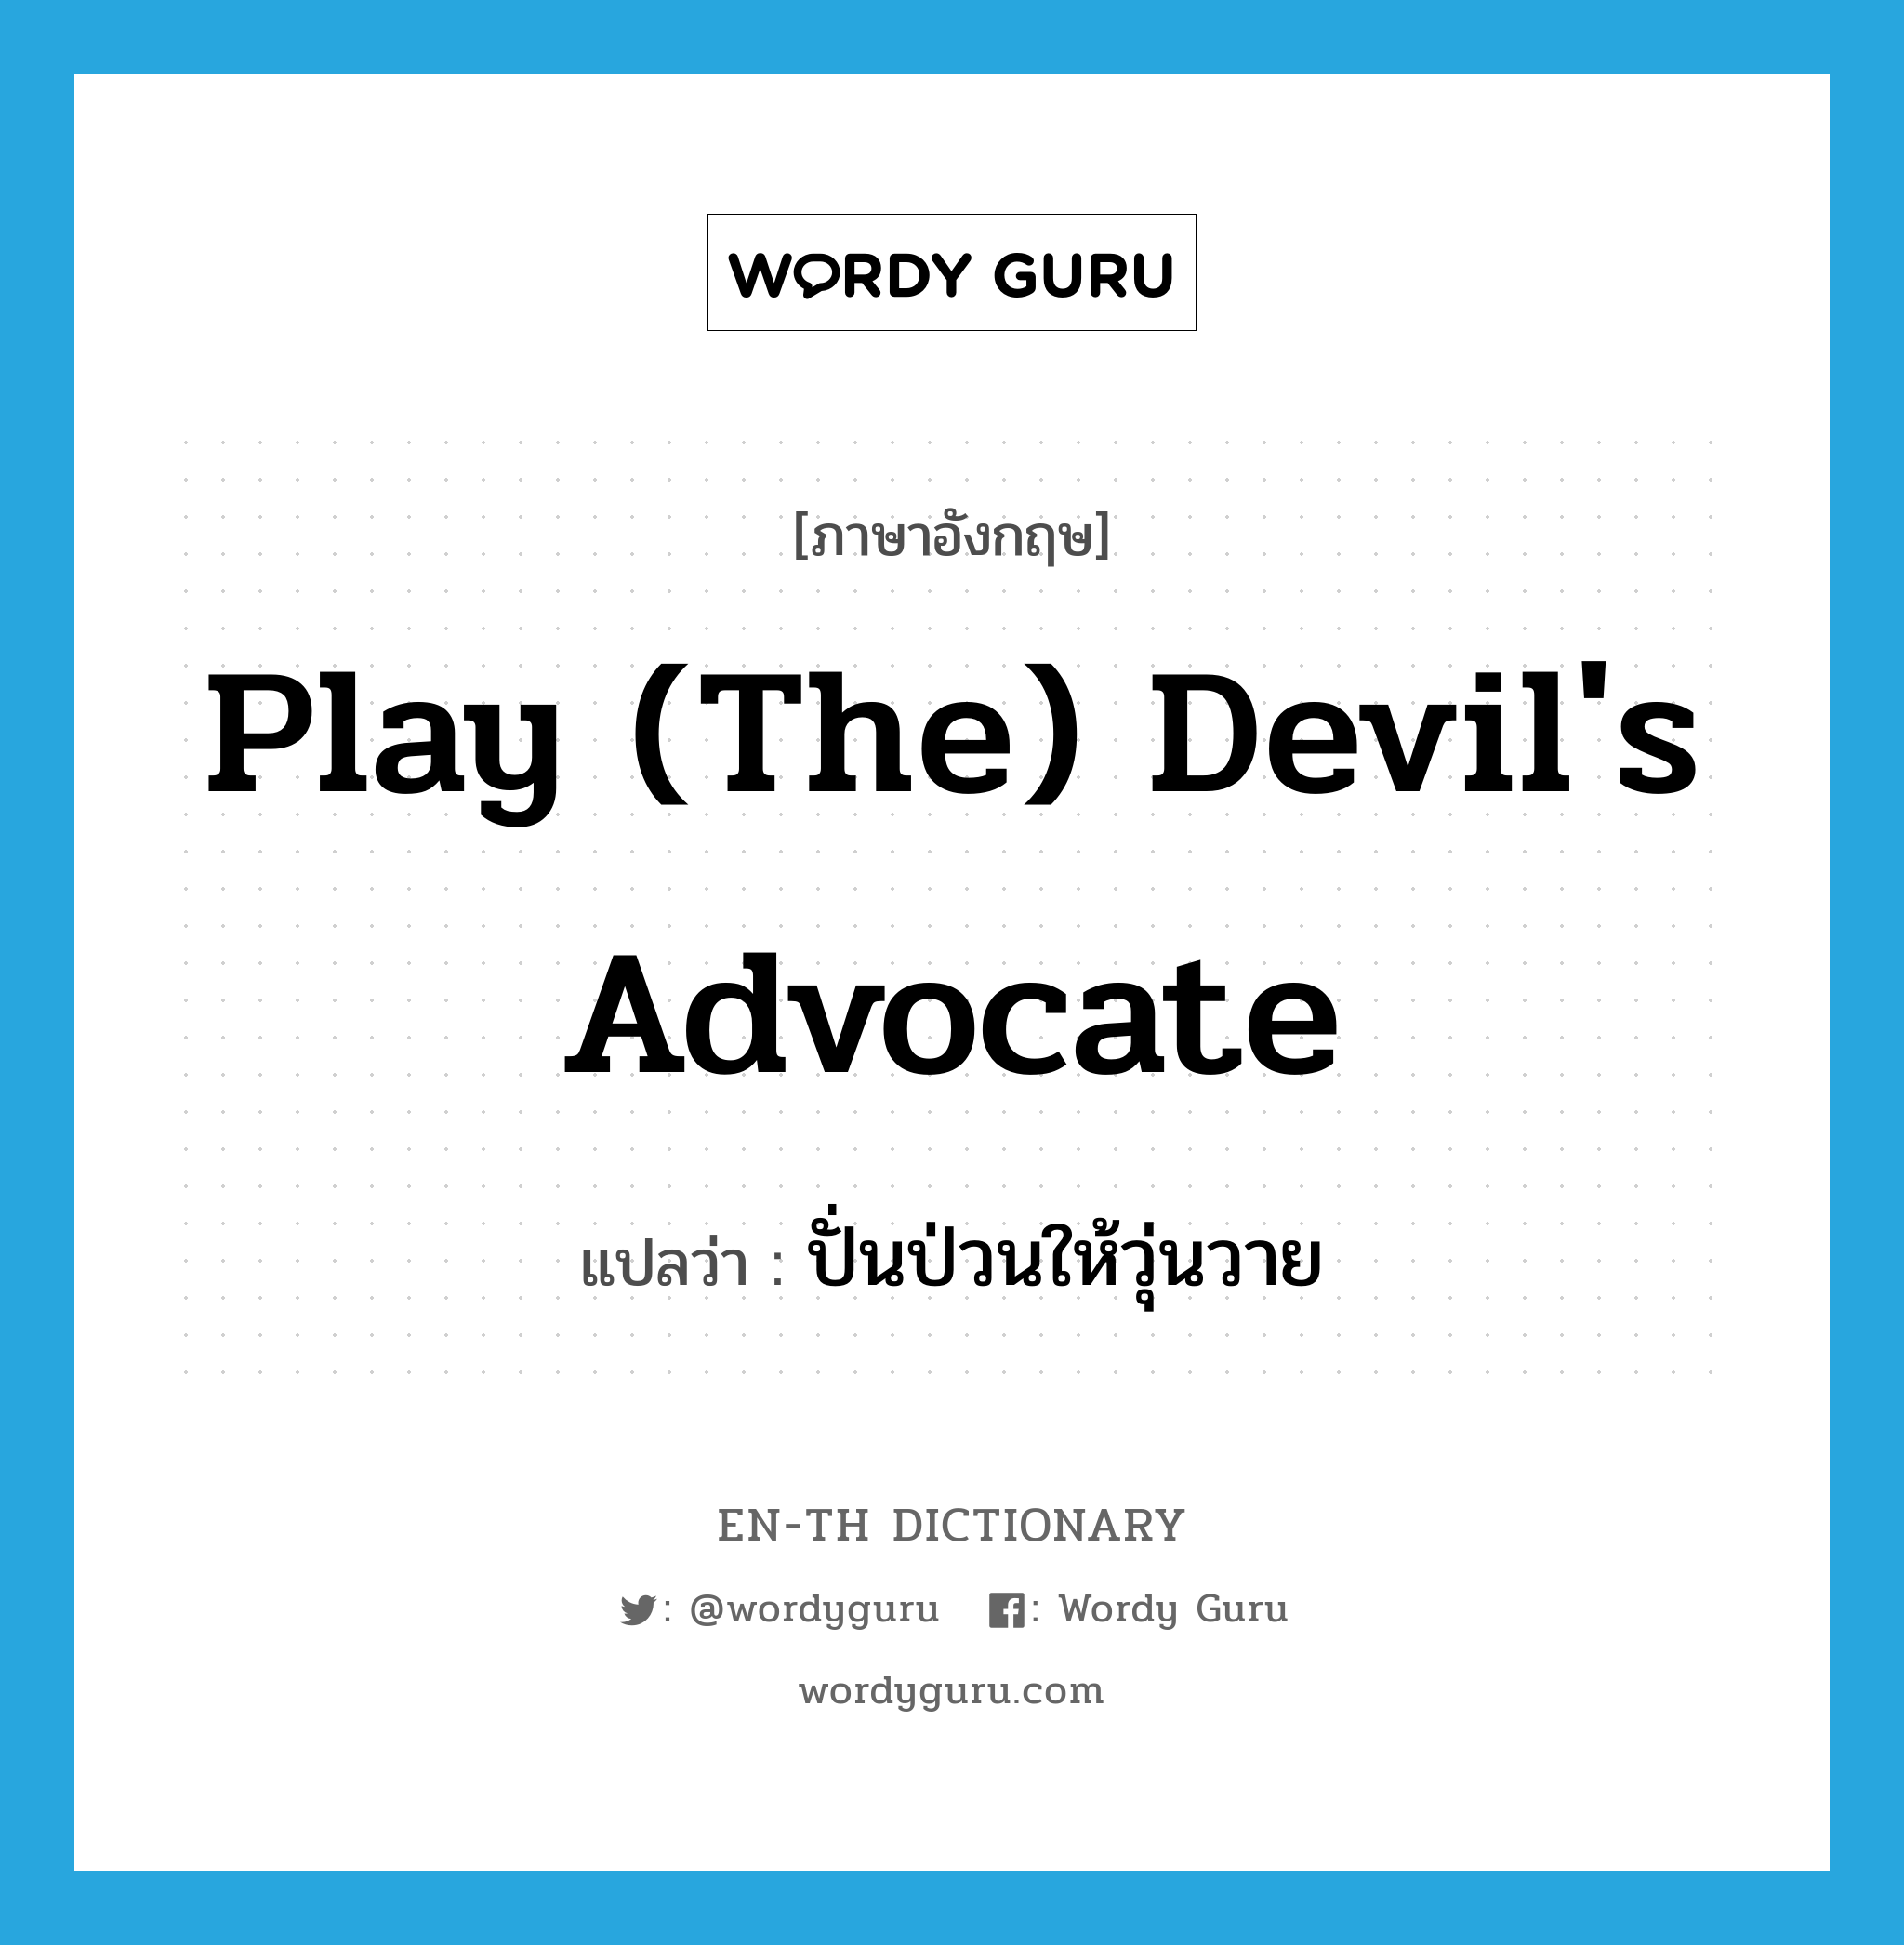 ปั่นป่วนให้วุ่นวาย ภาษาอังกฤษ?, คำศัพท์ภาษาอังกฤษ ปั่นป่วนให้วุ่นวาย แปลว่า play (the) devil's advocate ประเภท IDM หมวด IDM